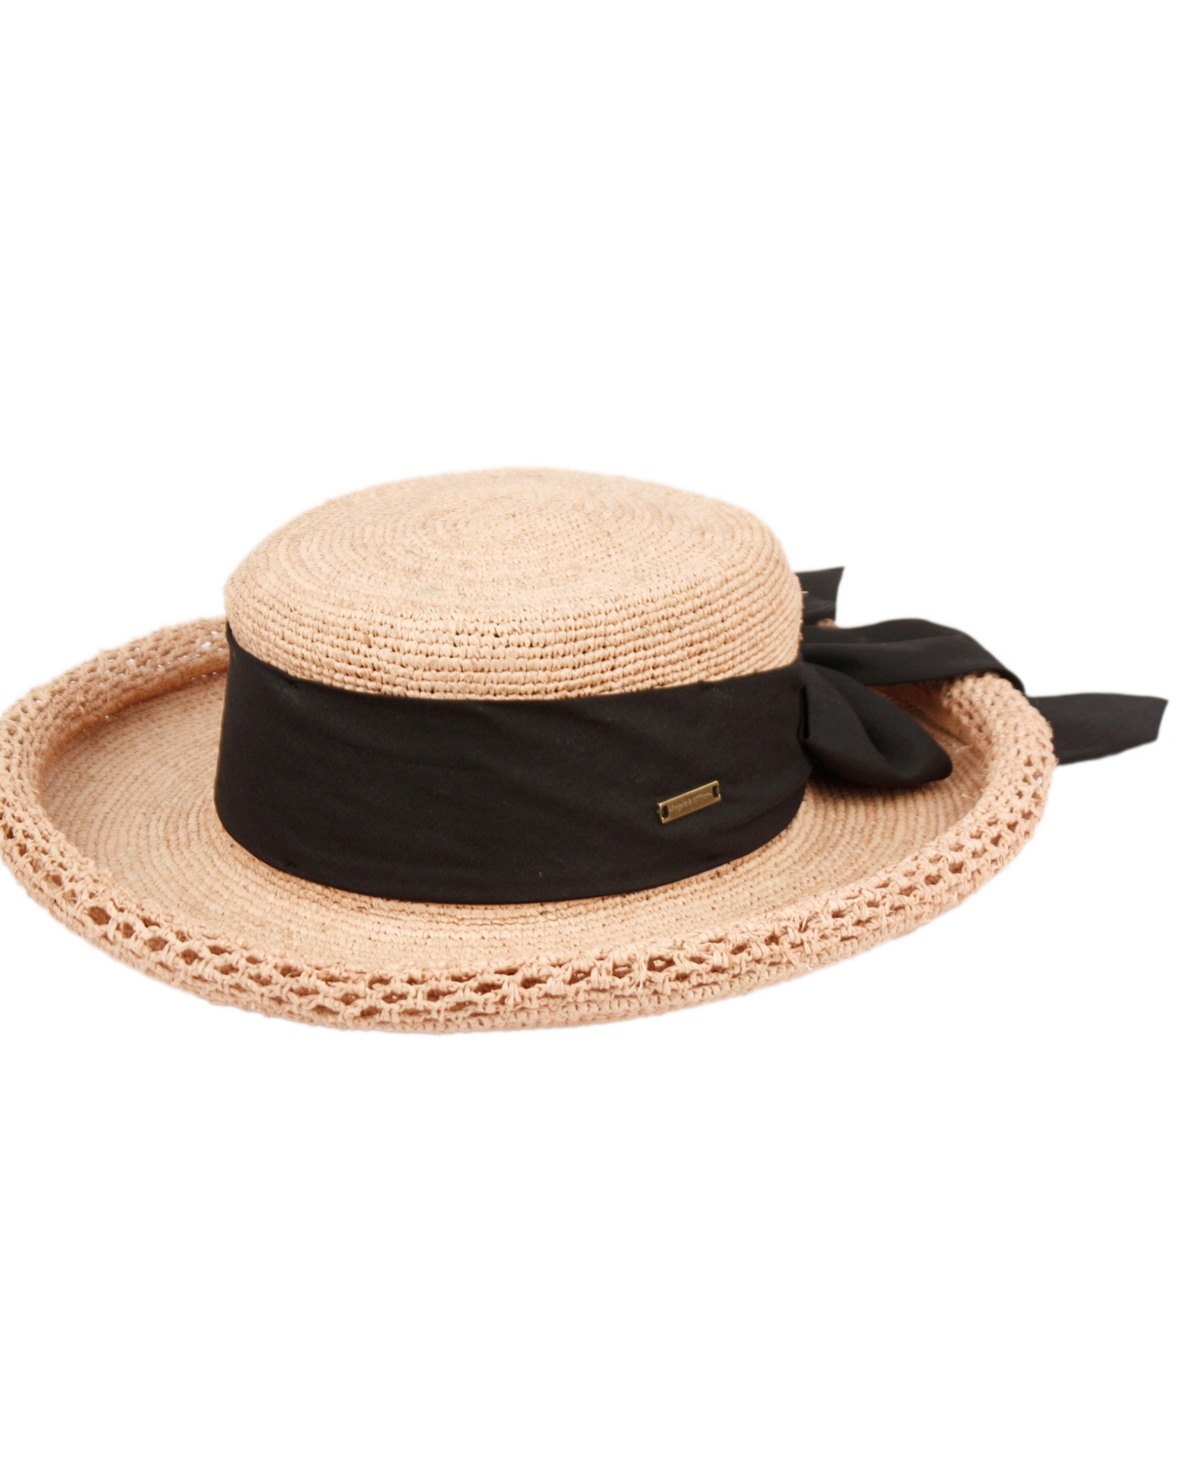 Women's Beach Sun Straw Floppy Hat - Natural